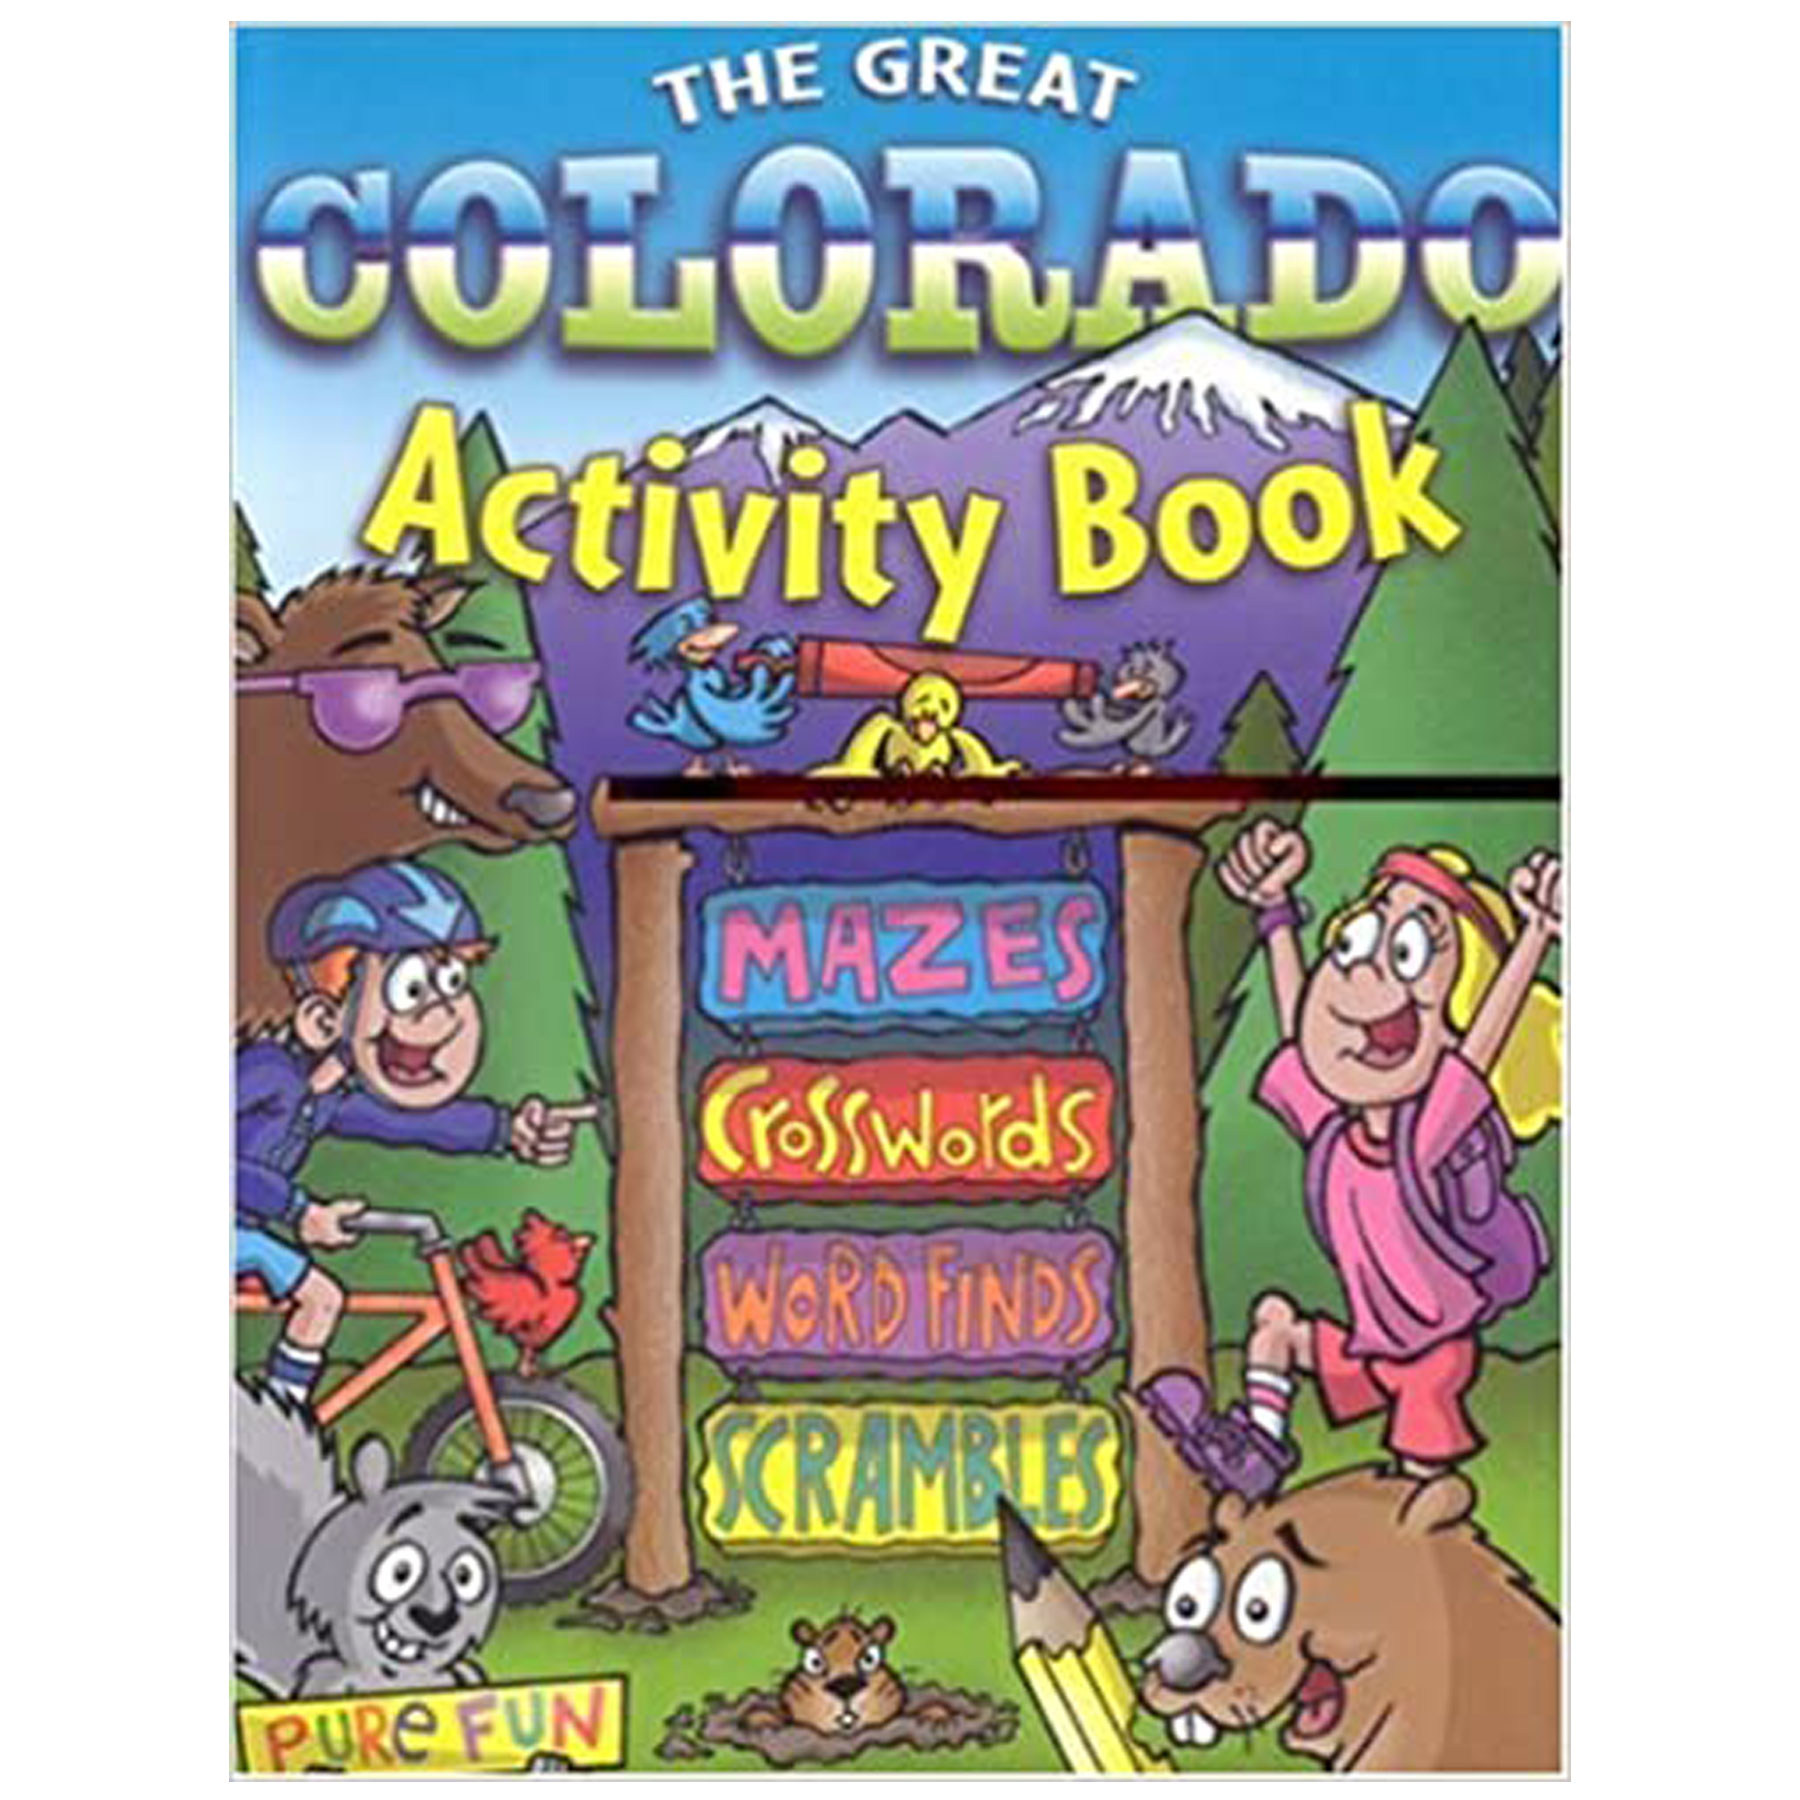 GREAT COLORADO ACTIVITY BOOK